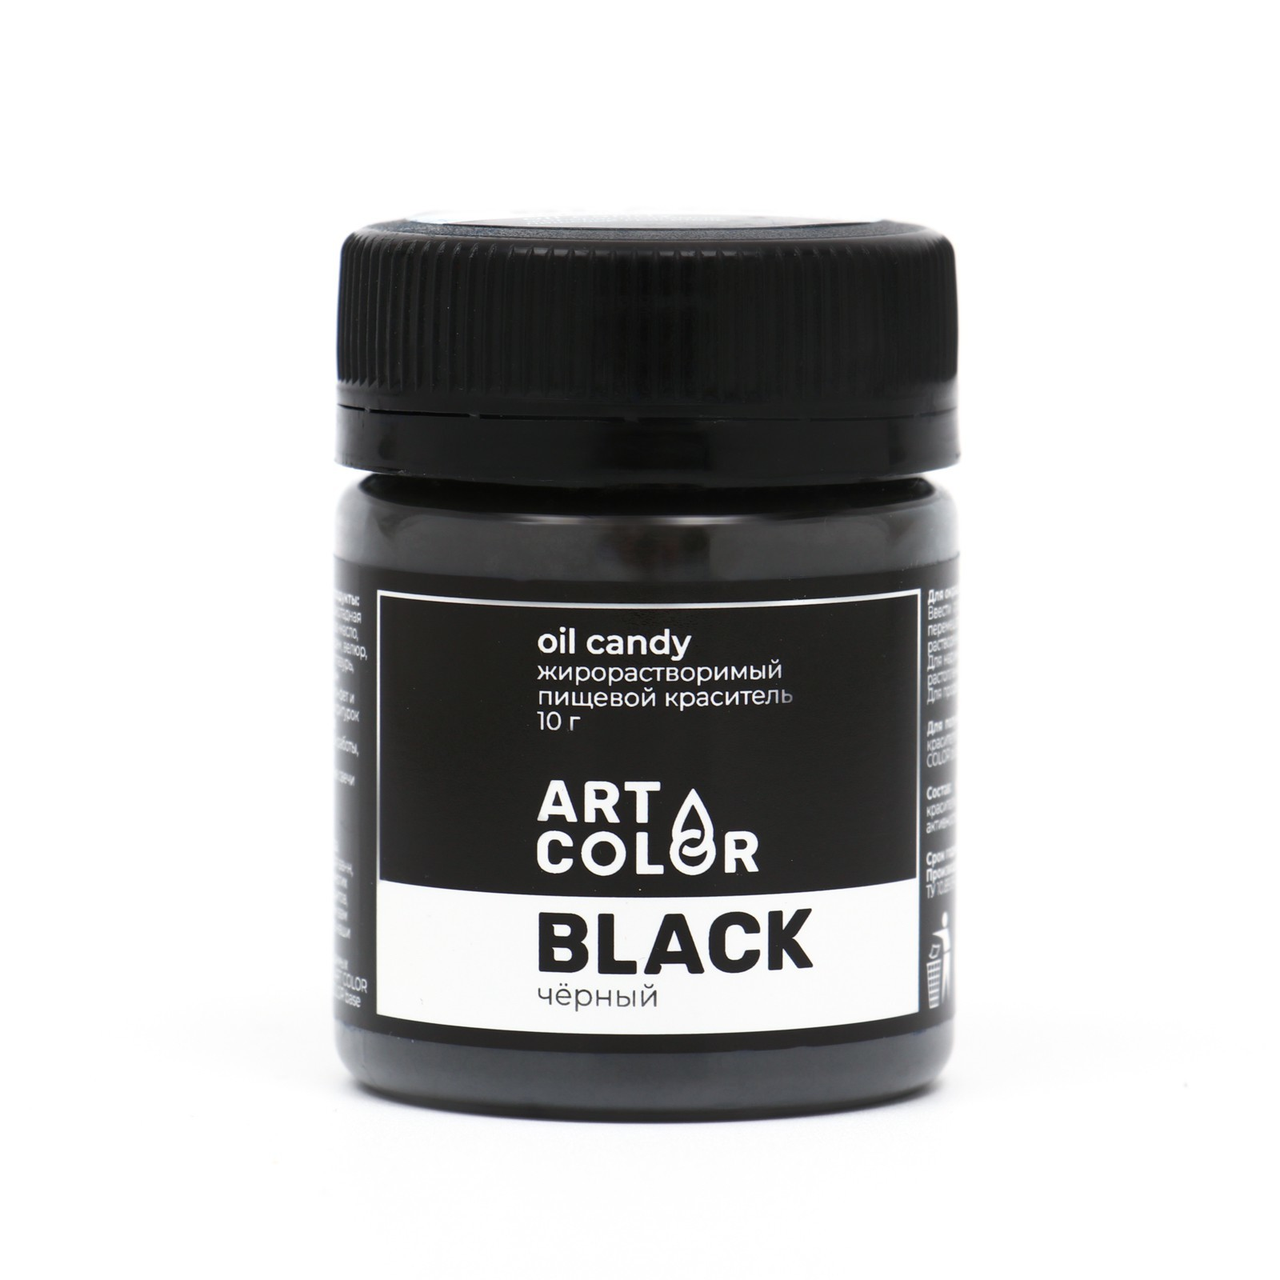 Сухой краситель Art Color Oil Candy жирорастворимый, черный, 10 г